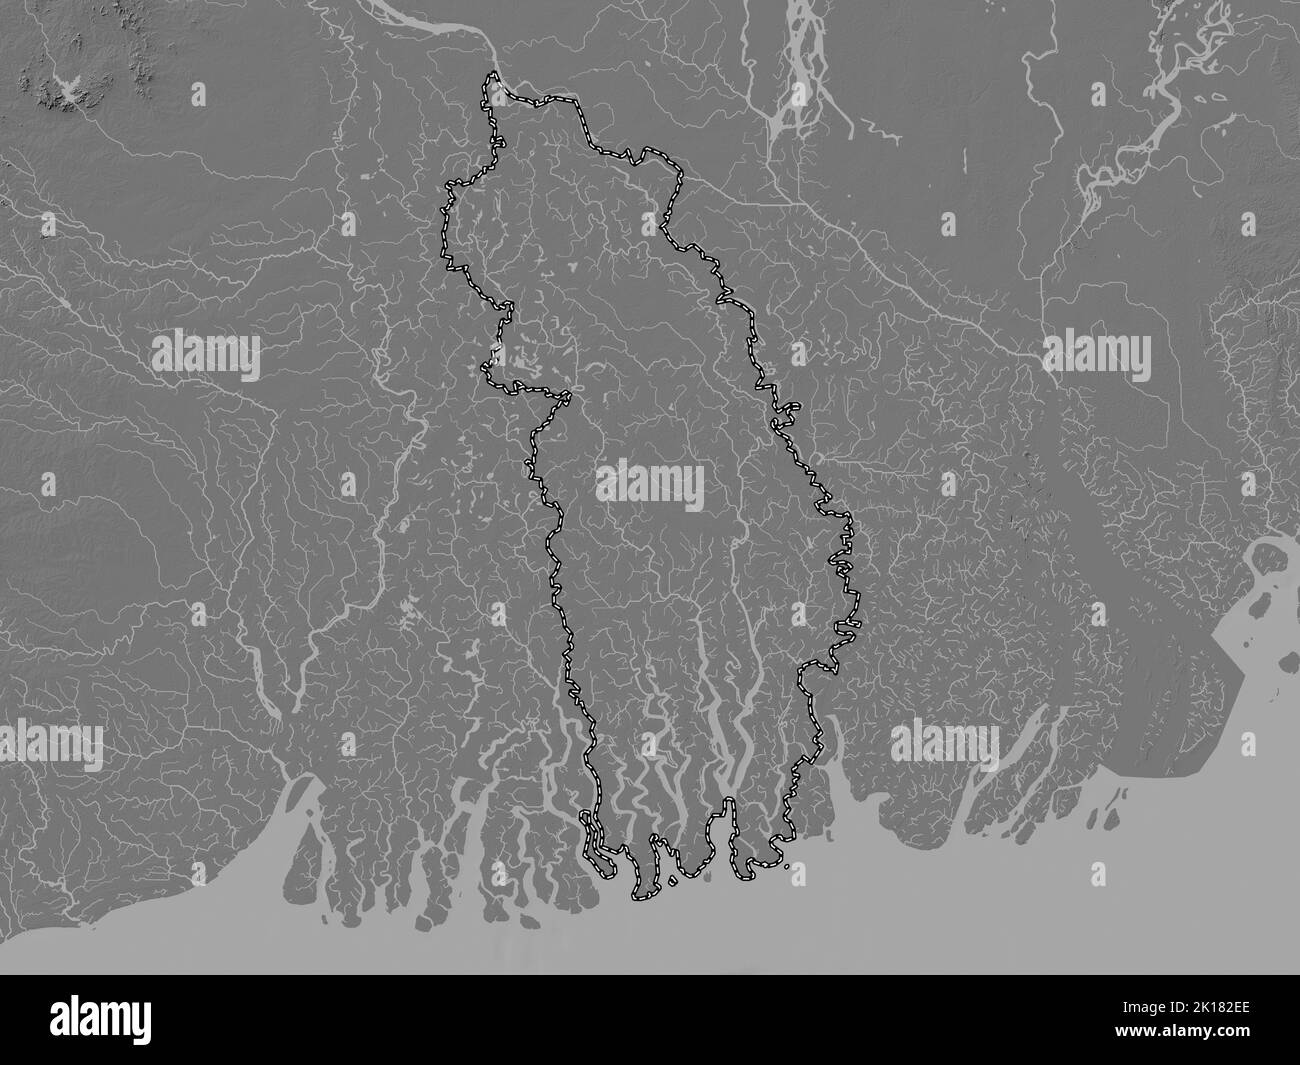 Khulna, division du Bangladesh. Carte d'altitude à deux niveaux avec lacs et rivières Banque D'Images